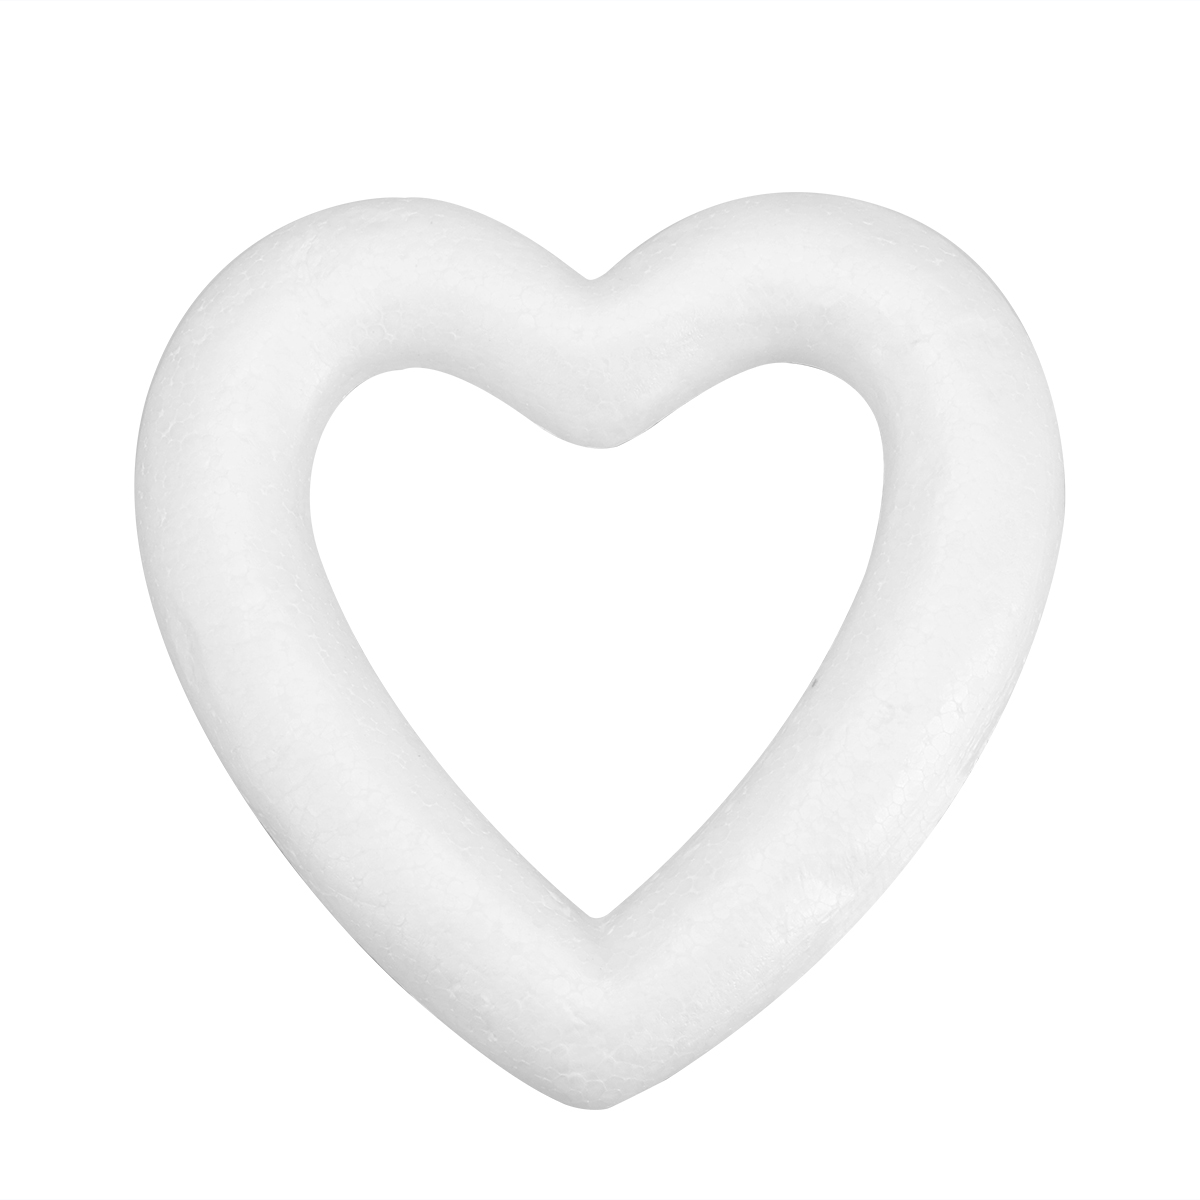 Styrofoam Hearts